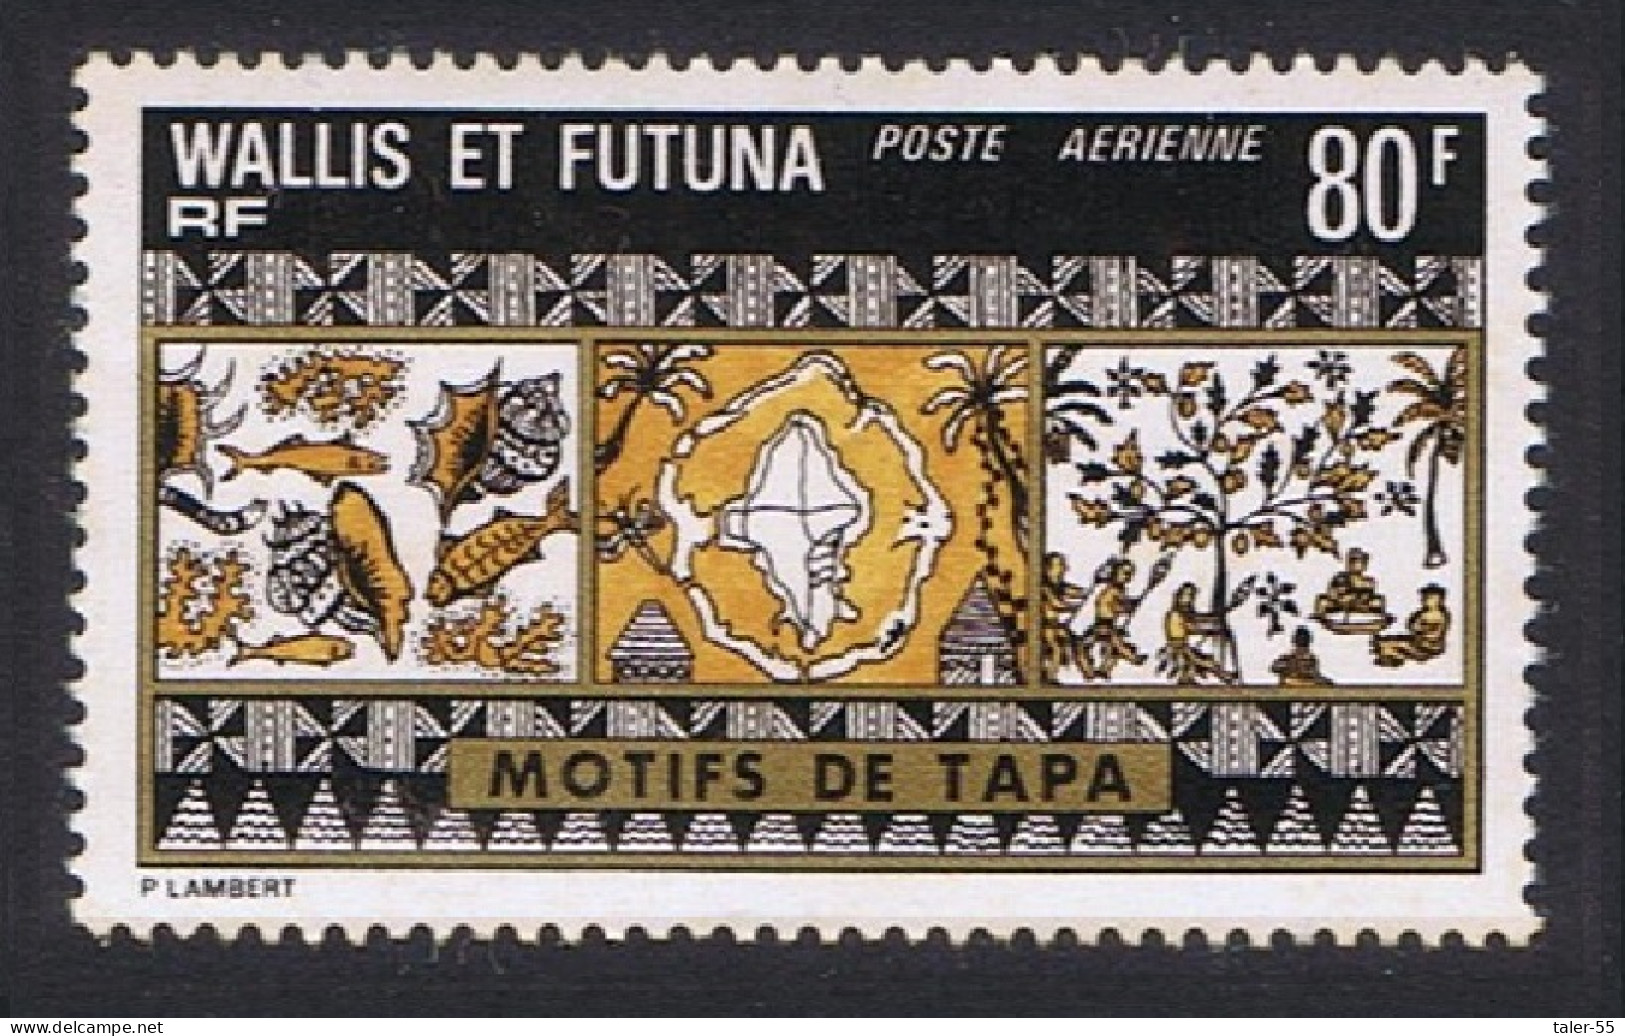 Wallis And Futuna Tapa Mats 80f Airmail 1975 MNH SG#242 MI#263 Sc#C59 - Nuovi